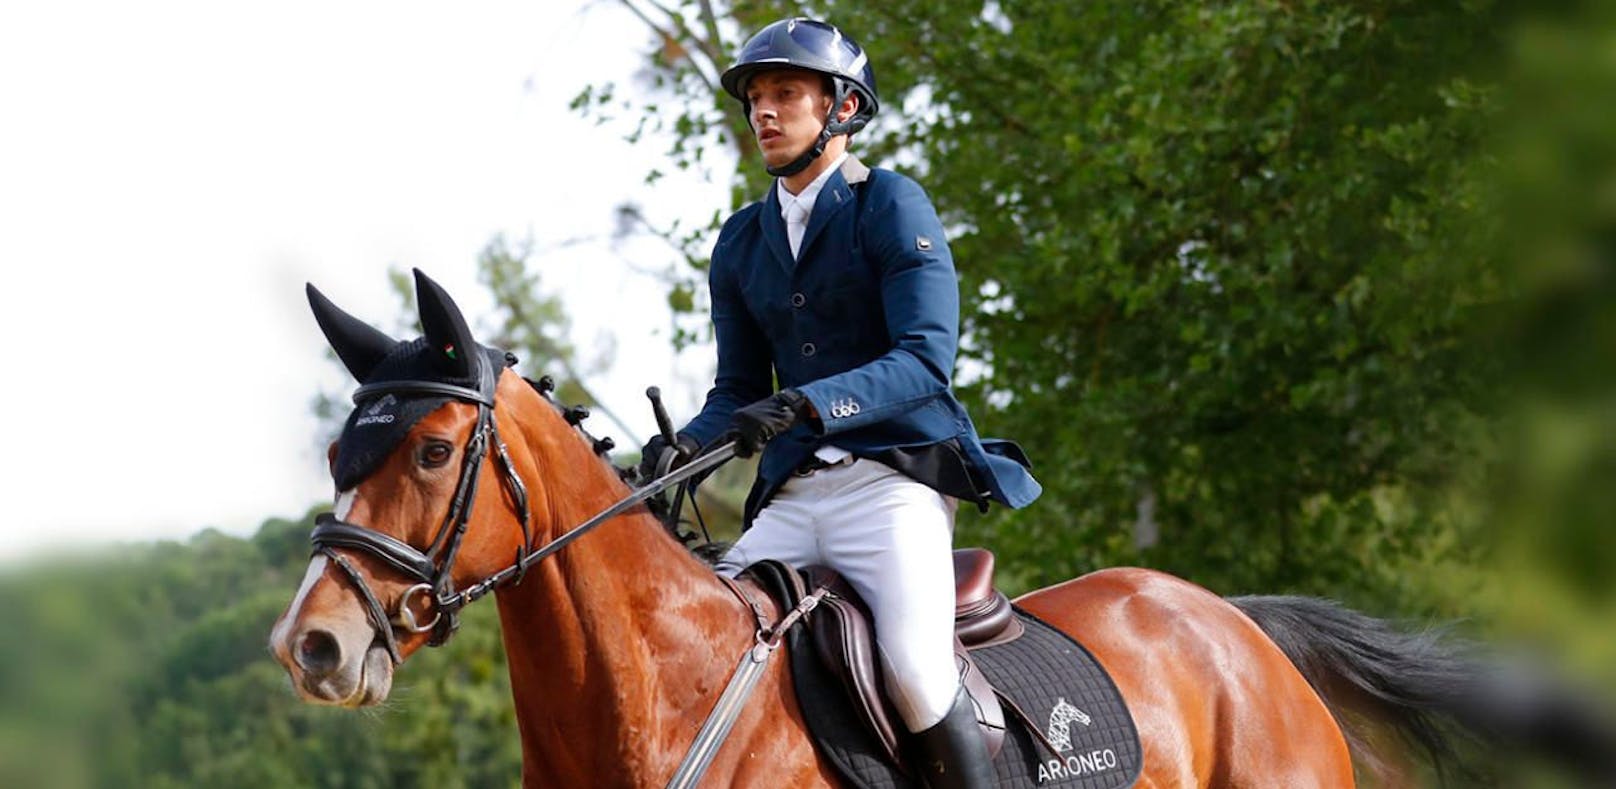 Der Franzose Maxime Debost bezahlte einen Überschlag mit seinem Pferd mit dem Leben. 